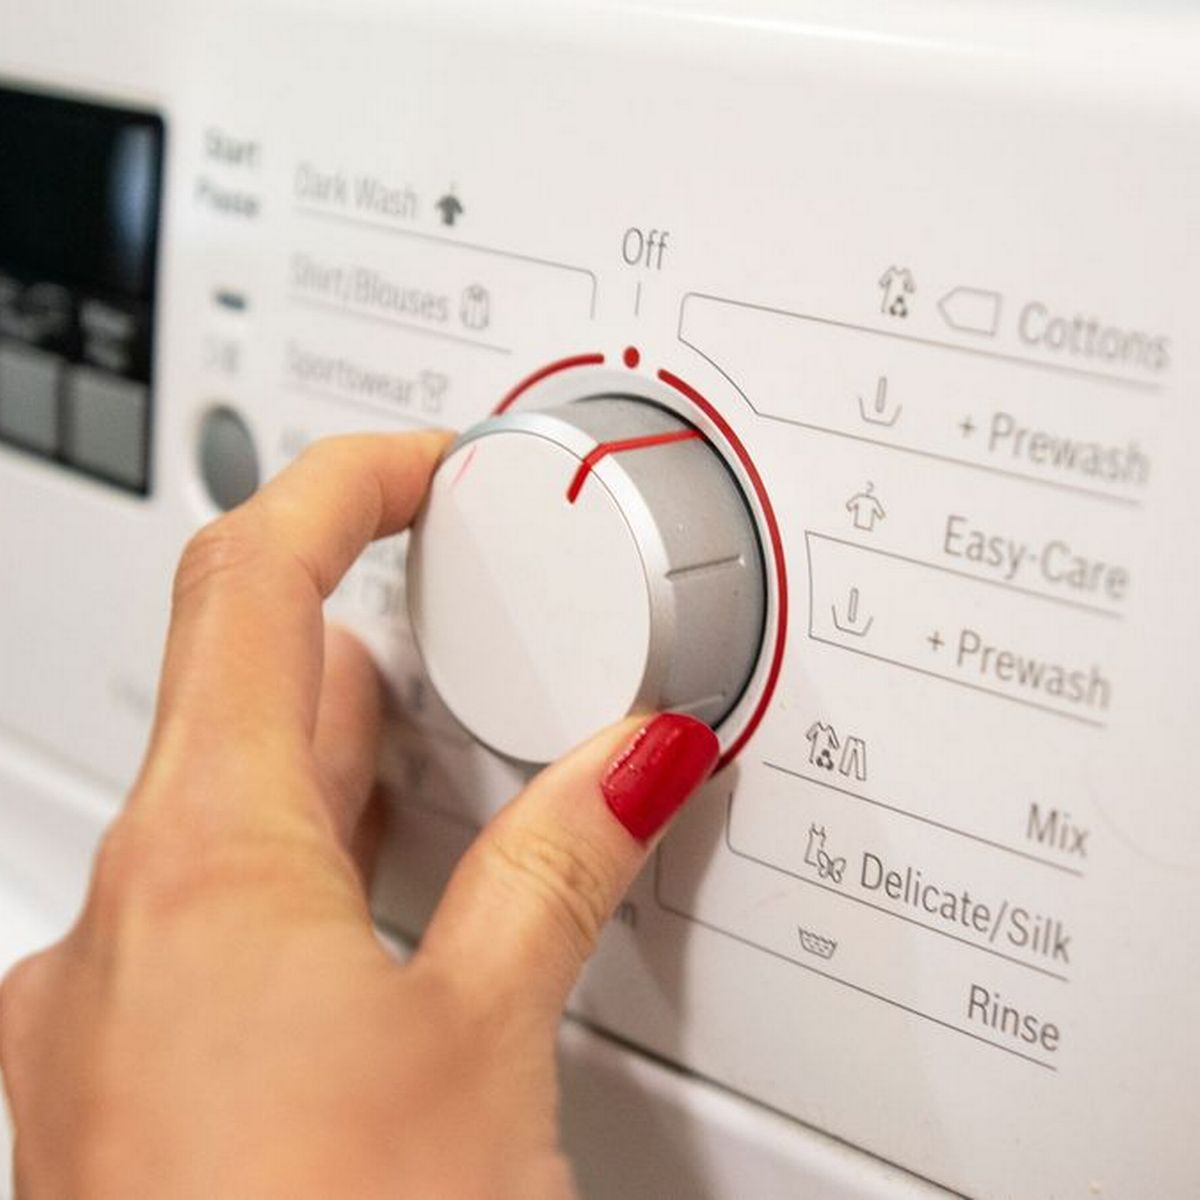 кнопка Пуск не работает на стиральной машине